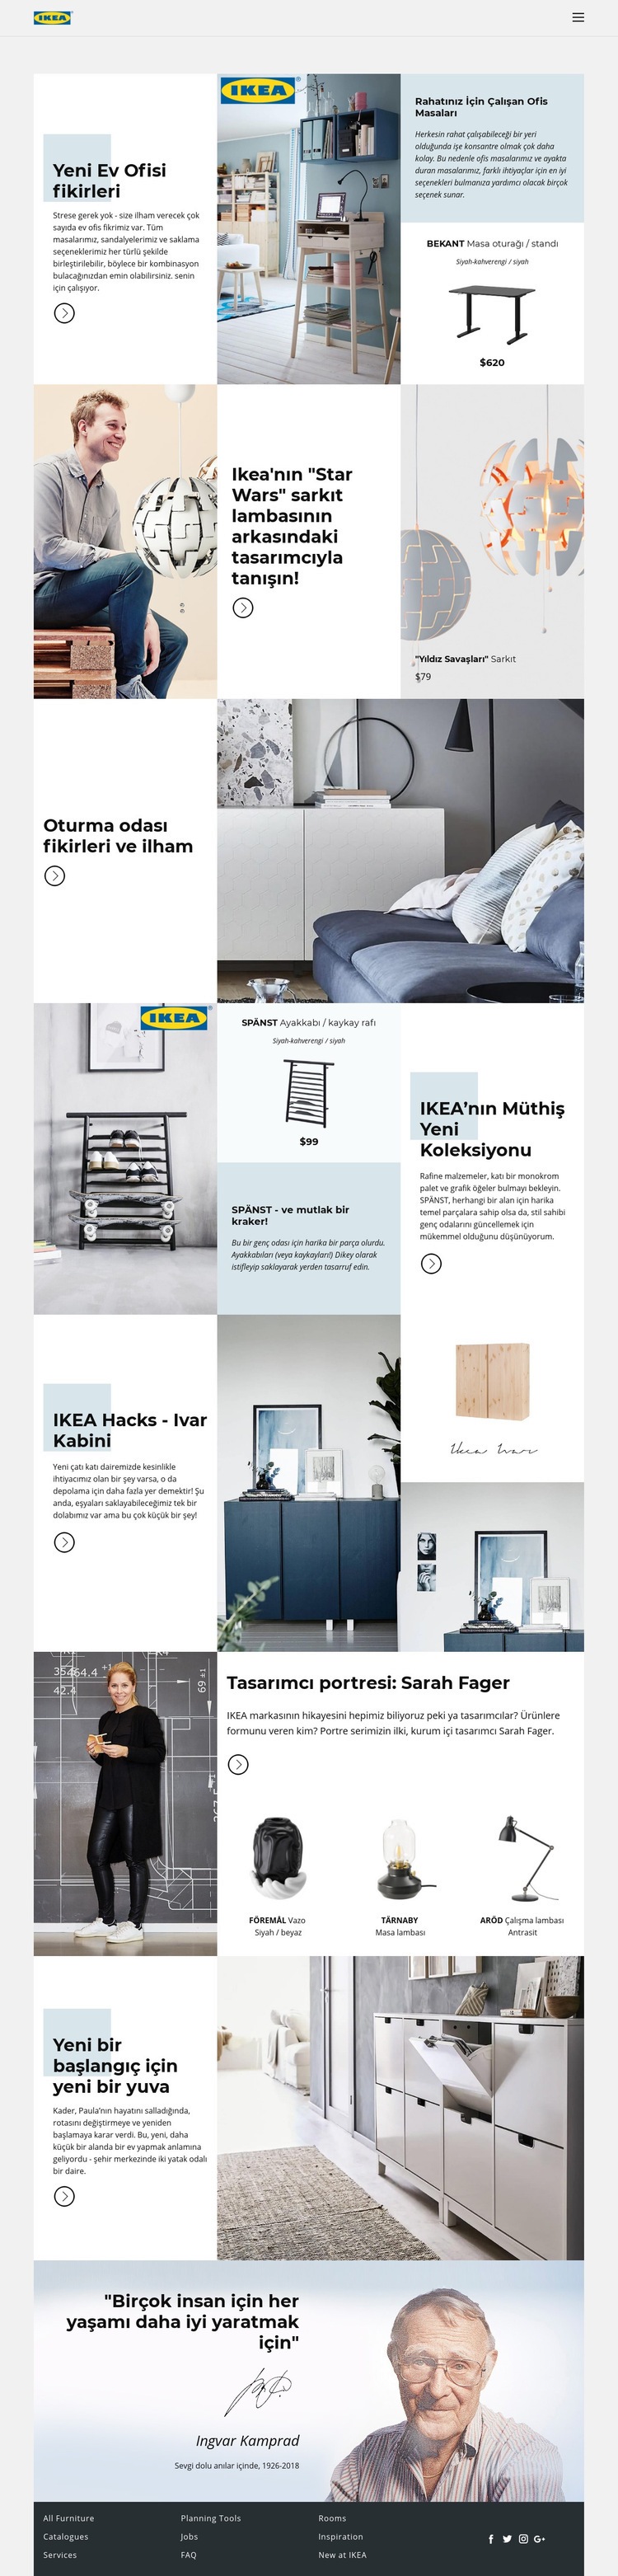 IKEA'dan İlham Açılış sayfası